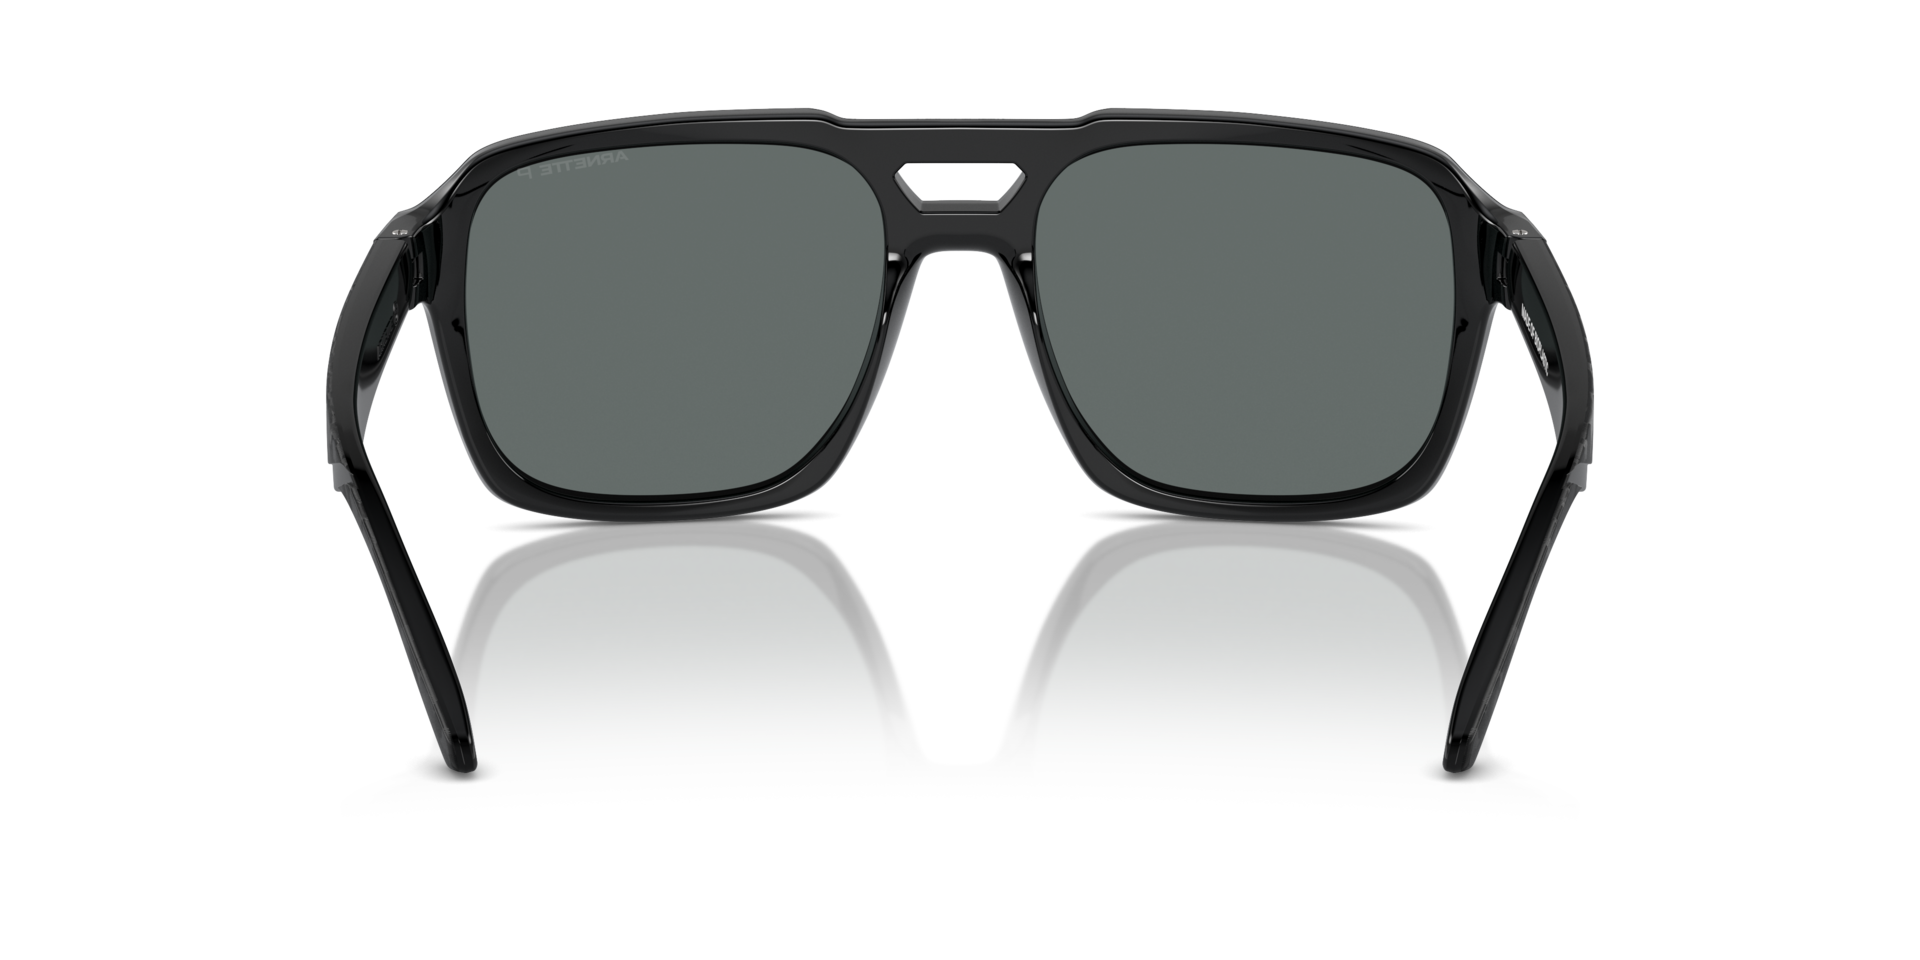 Das Bild zeigt die Sonnenbrille AN4339 290081 von der Marke Arnette in schwarz.